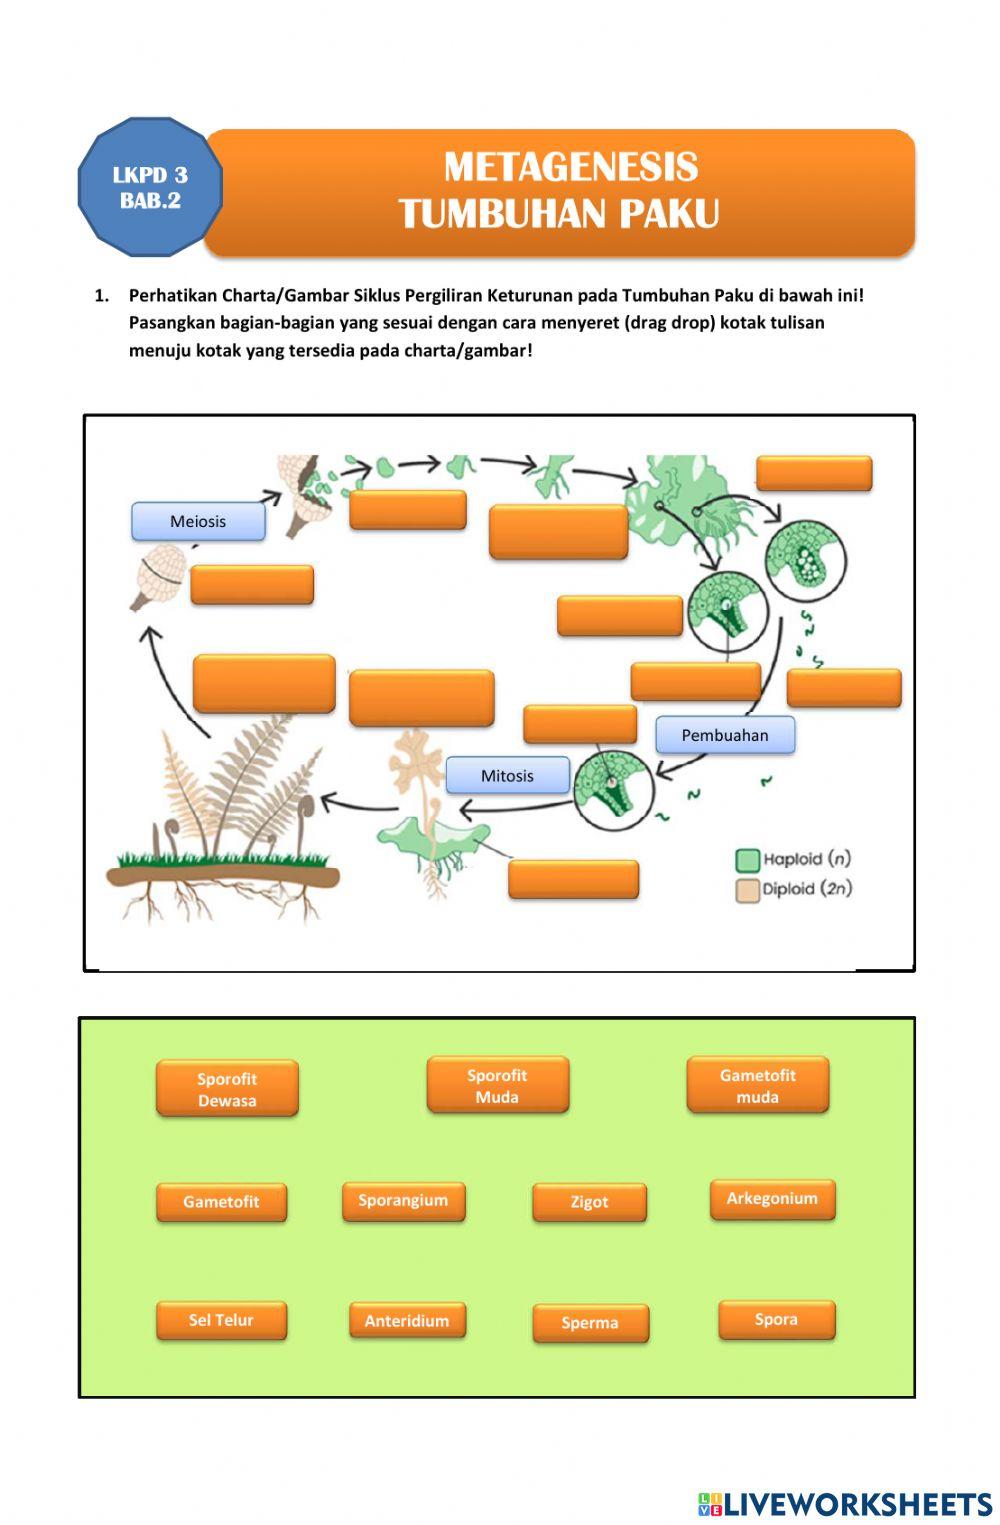 KLPD 3-Metagenesis Tumbuhan Paku